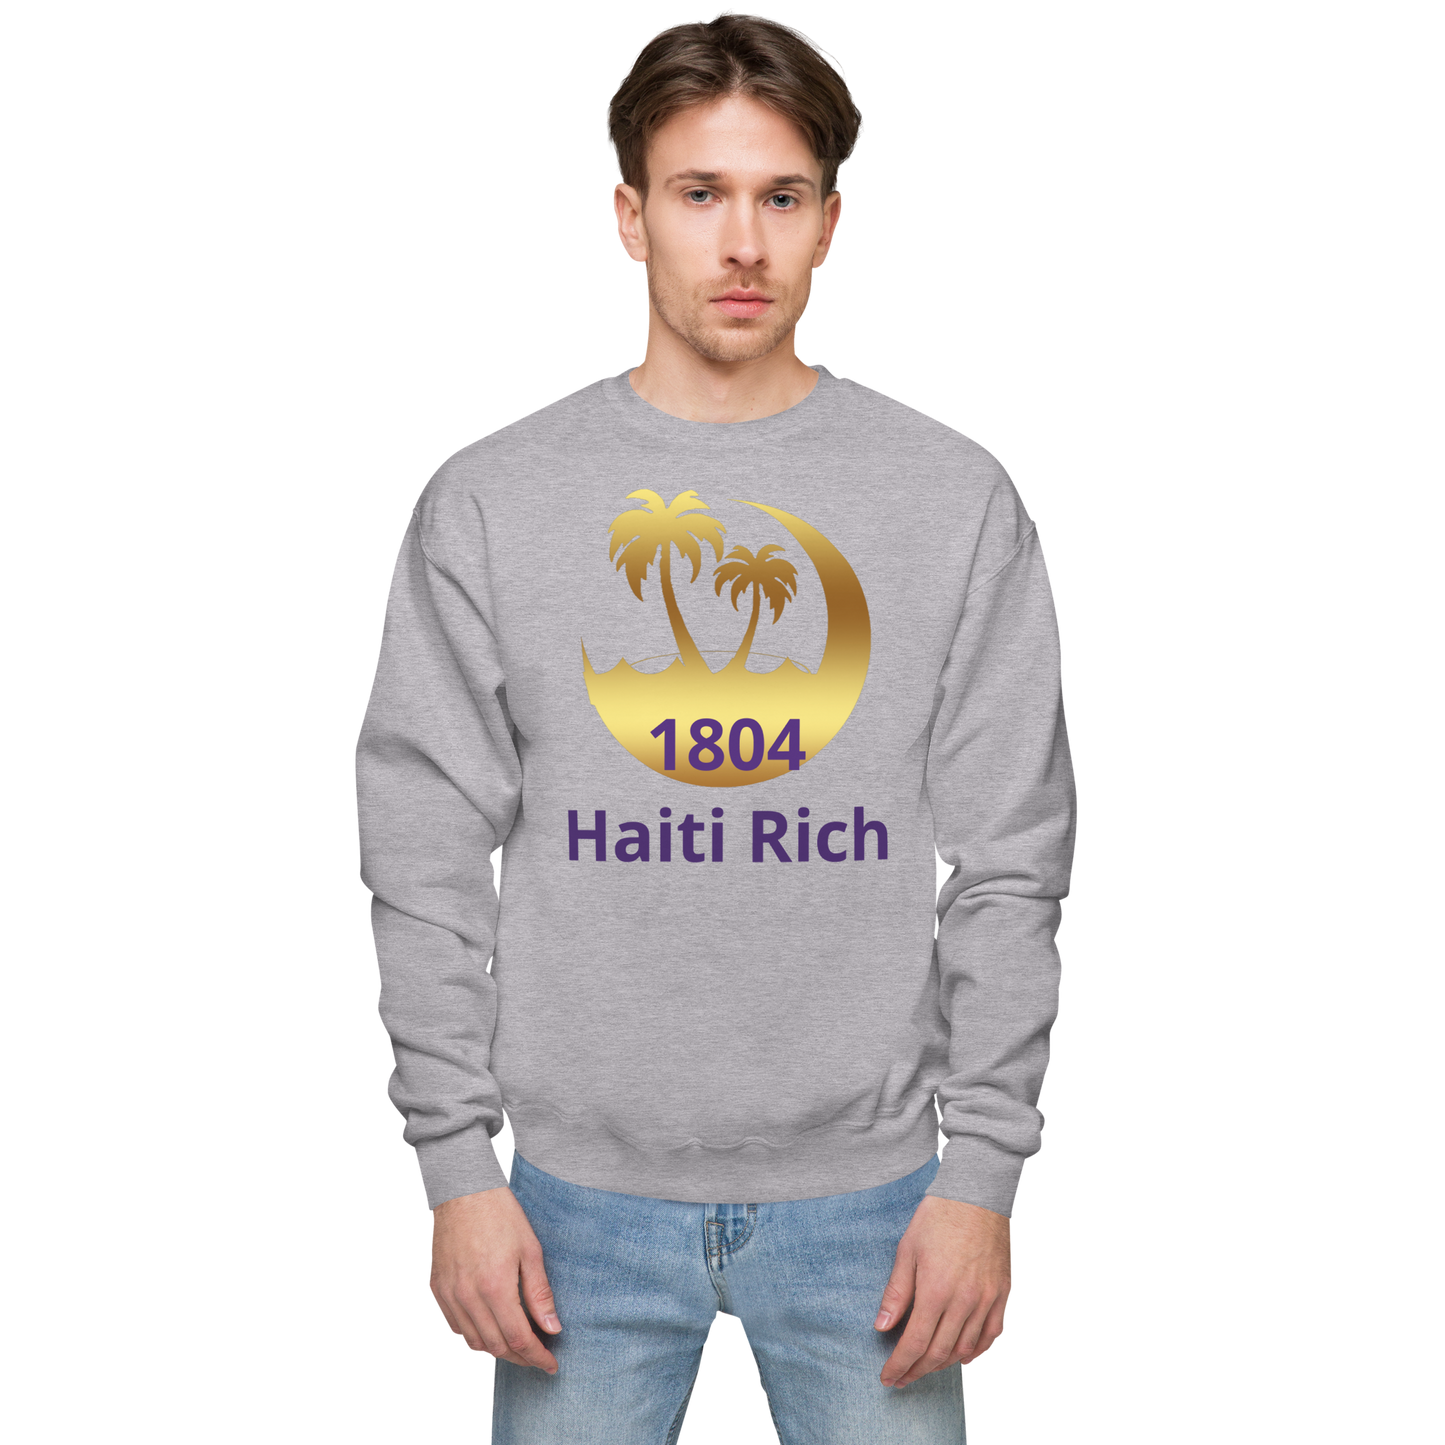 Haiti rich Unisex fleece sweatshirt